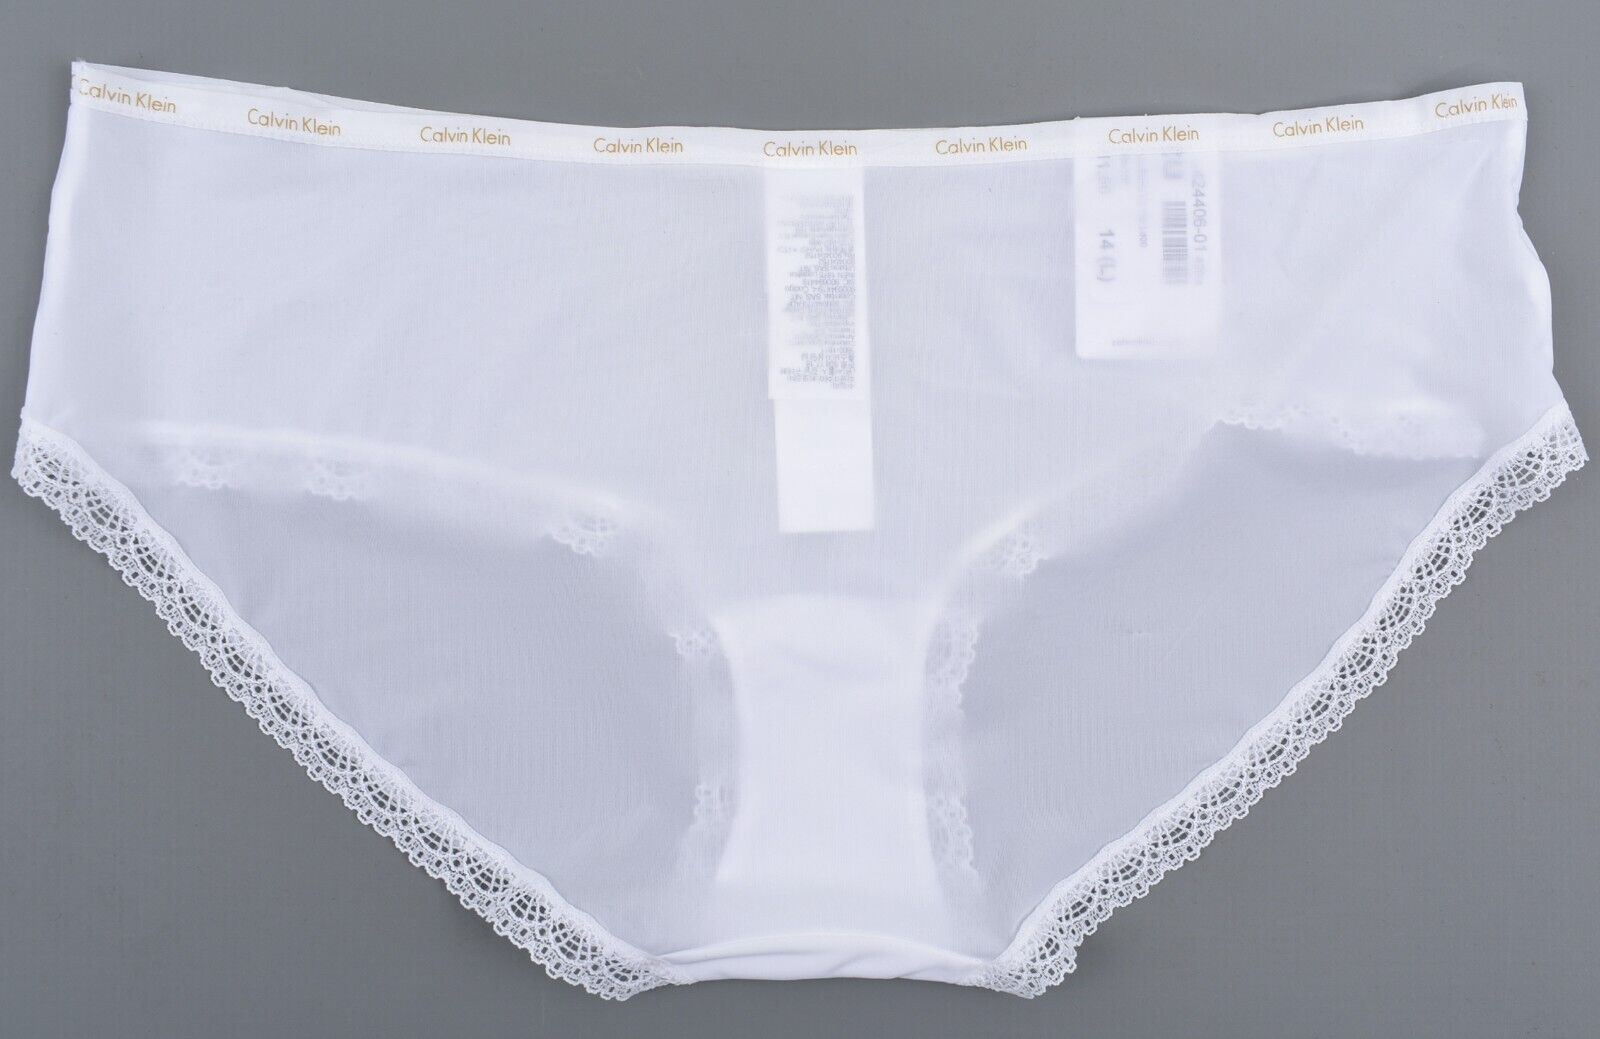 CALVIN KLEIN Underwear: Bottoms Up Women's Hipster Knickers, White, size L